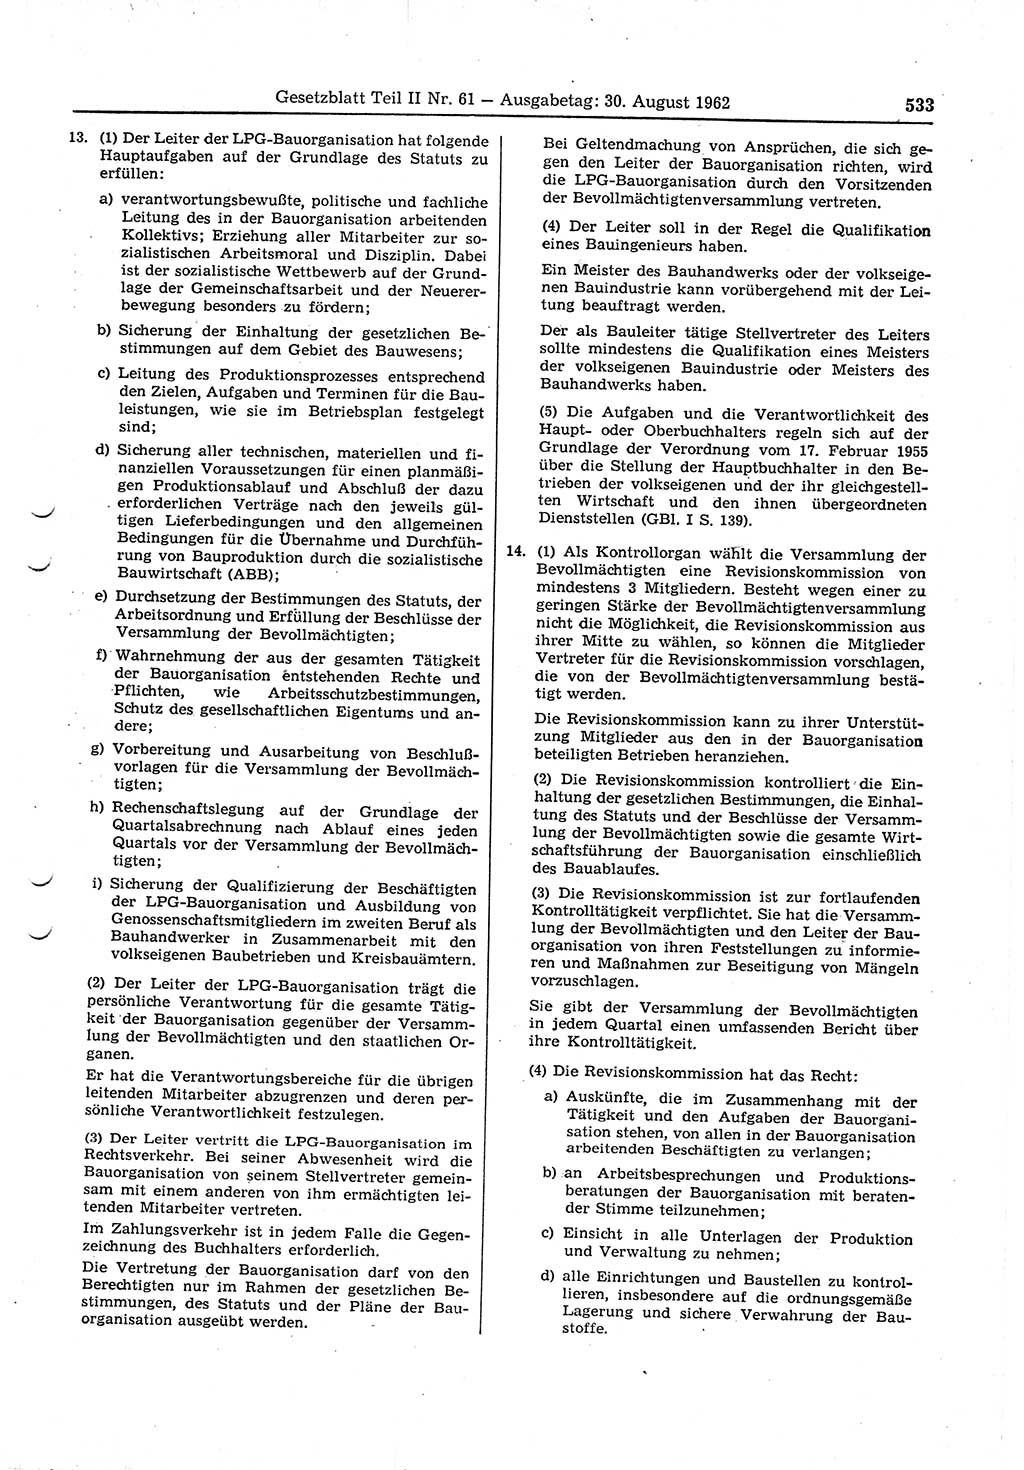 Gesetzblatt (GBl.) der Deutschen Demokratischen Republik (DDR) Teil ⅠⅠ 1962, Seite 533 (GBl. DDR ⅠⅠ 1962, S. 533)